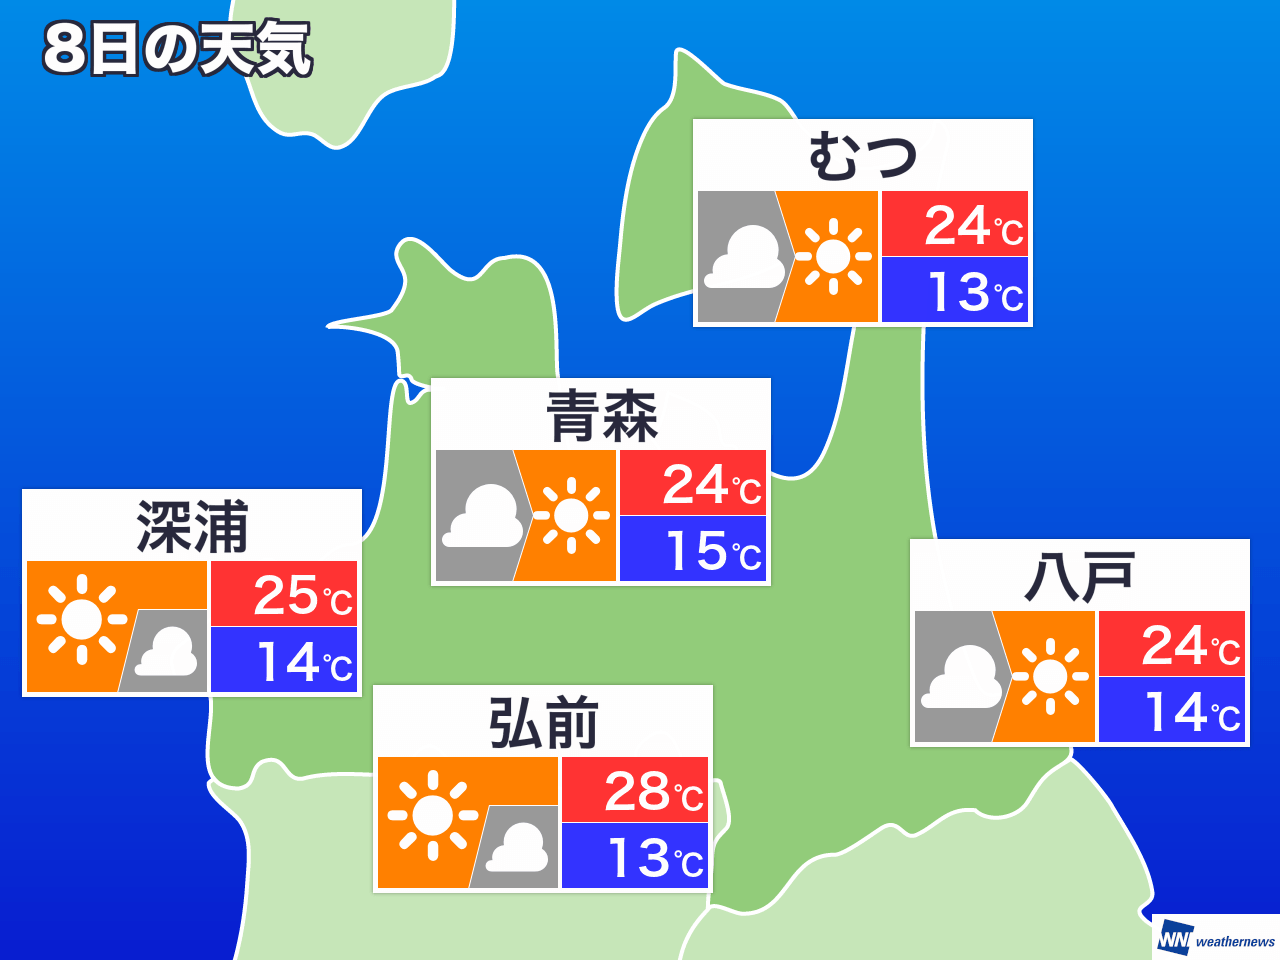 10月6日 日 青森県の今日の天気 ウェザーニュース